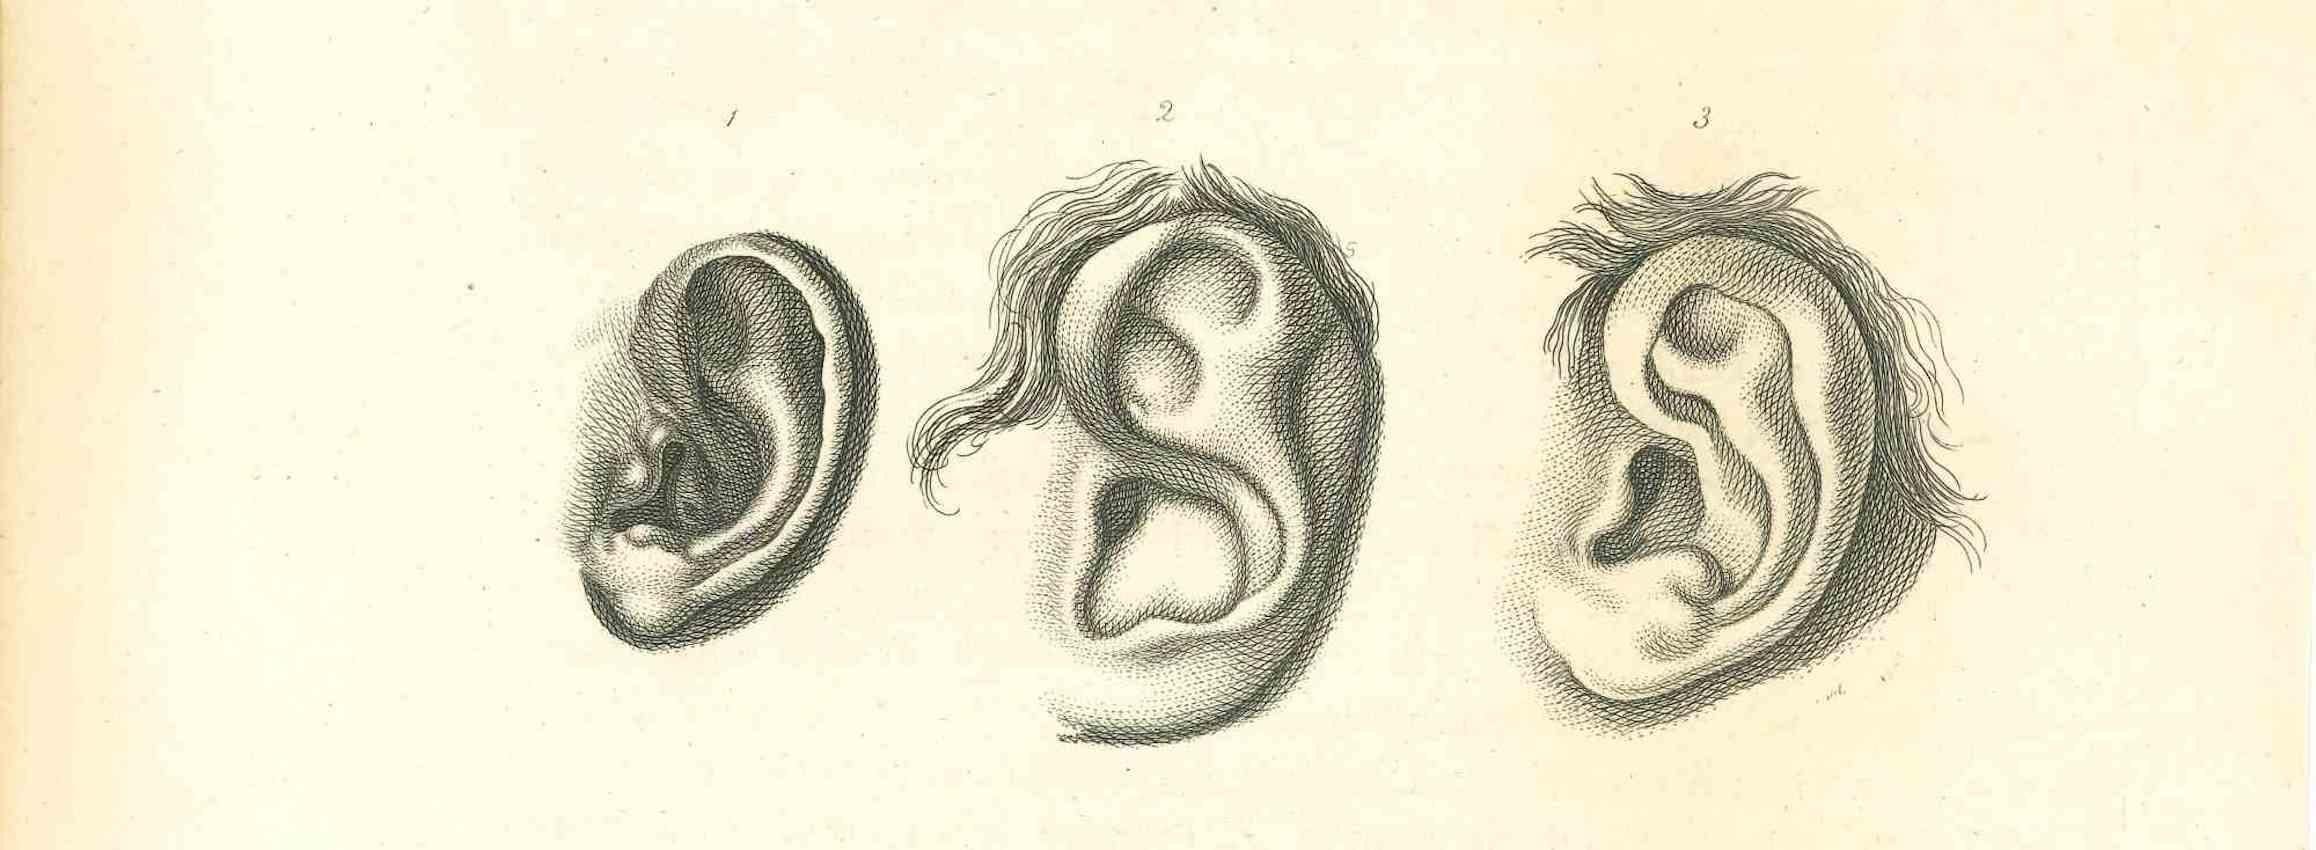 The Physiognomy - The Ears ist eine Originalradierung von Thomas Holloway für Johann Caspar Lavaters "Essays on Physiognomy, Designed to Promote the Knowledge and the Love of Mankind", London, Bensley, 1810. 

Gute Bedingungen.

Mit dem Vermerk auf